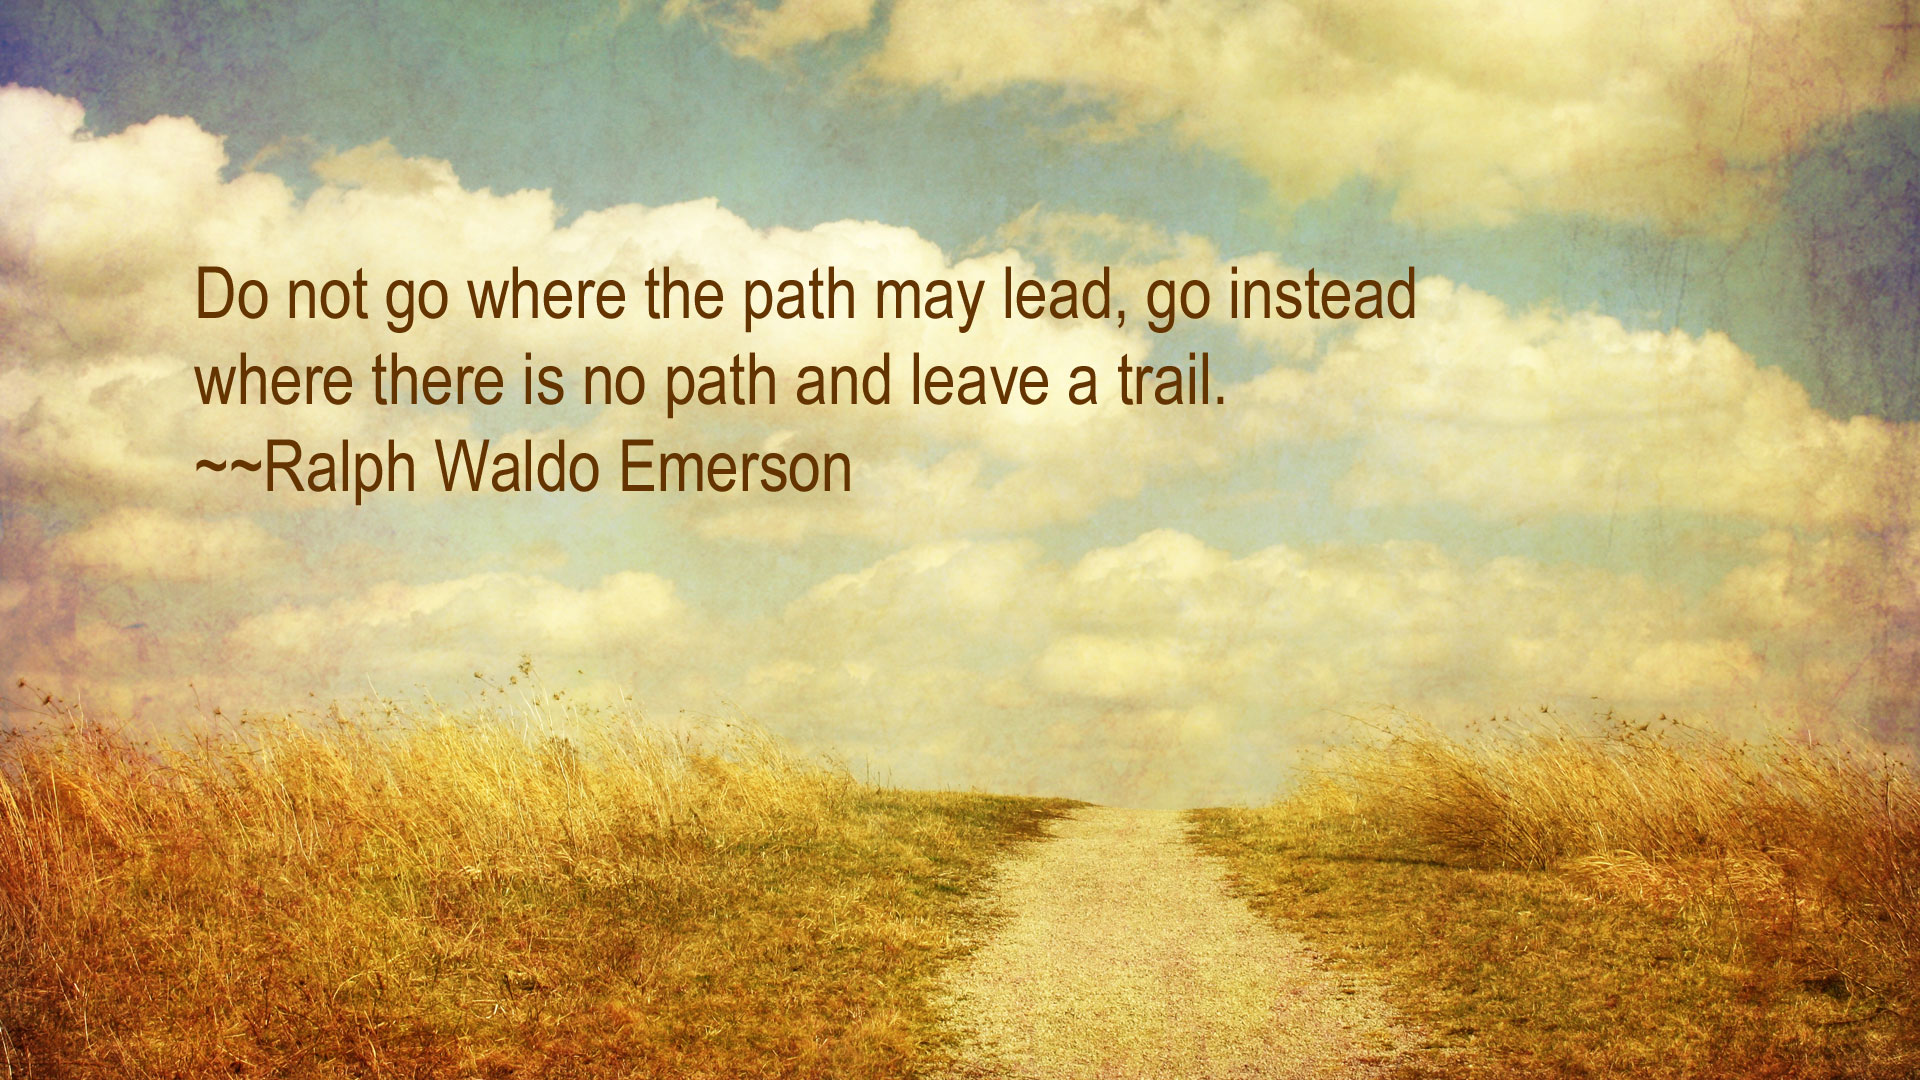 Ralph Waldo Emerson's quote #5